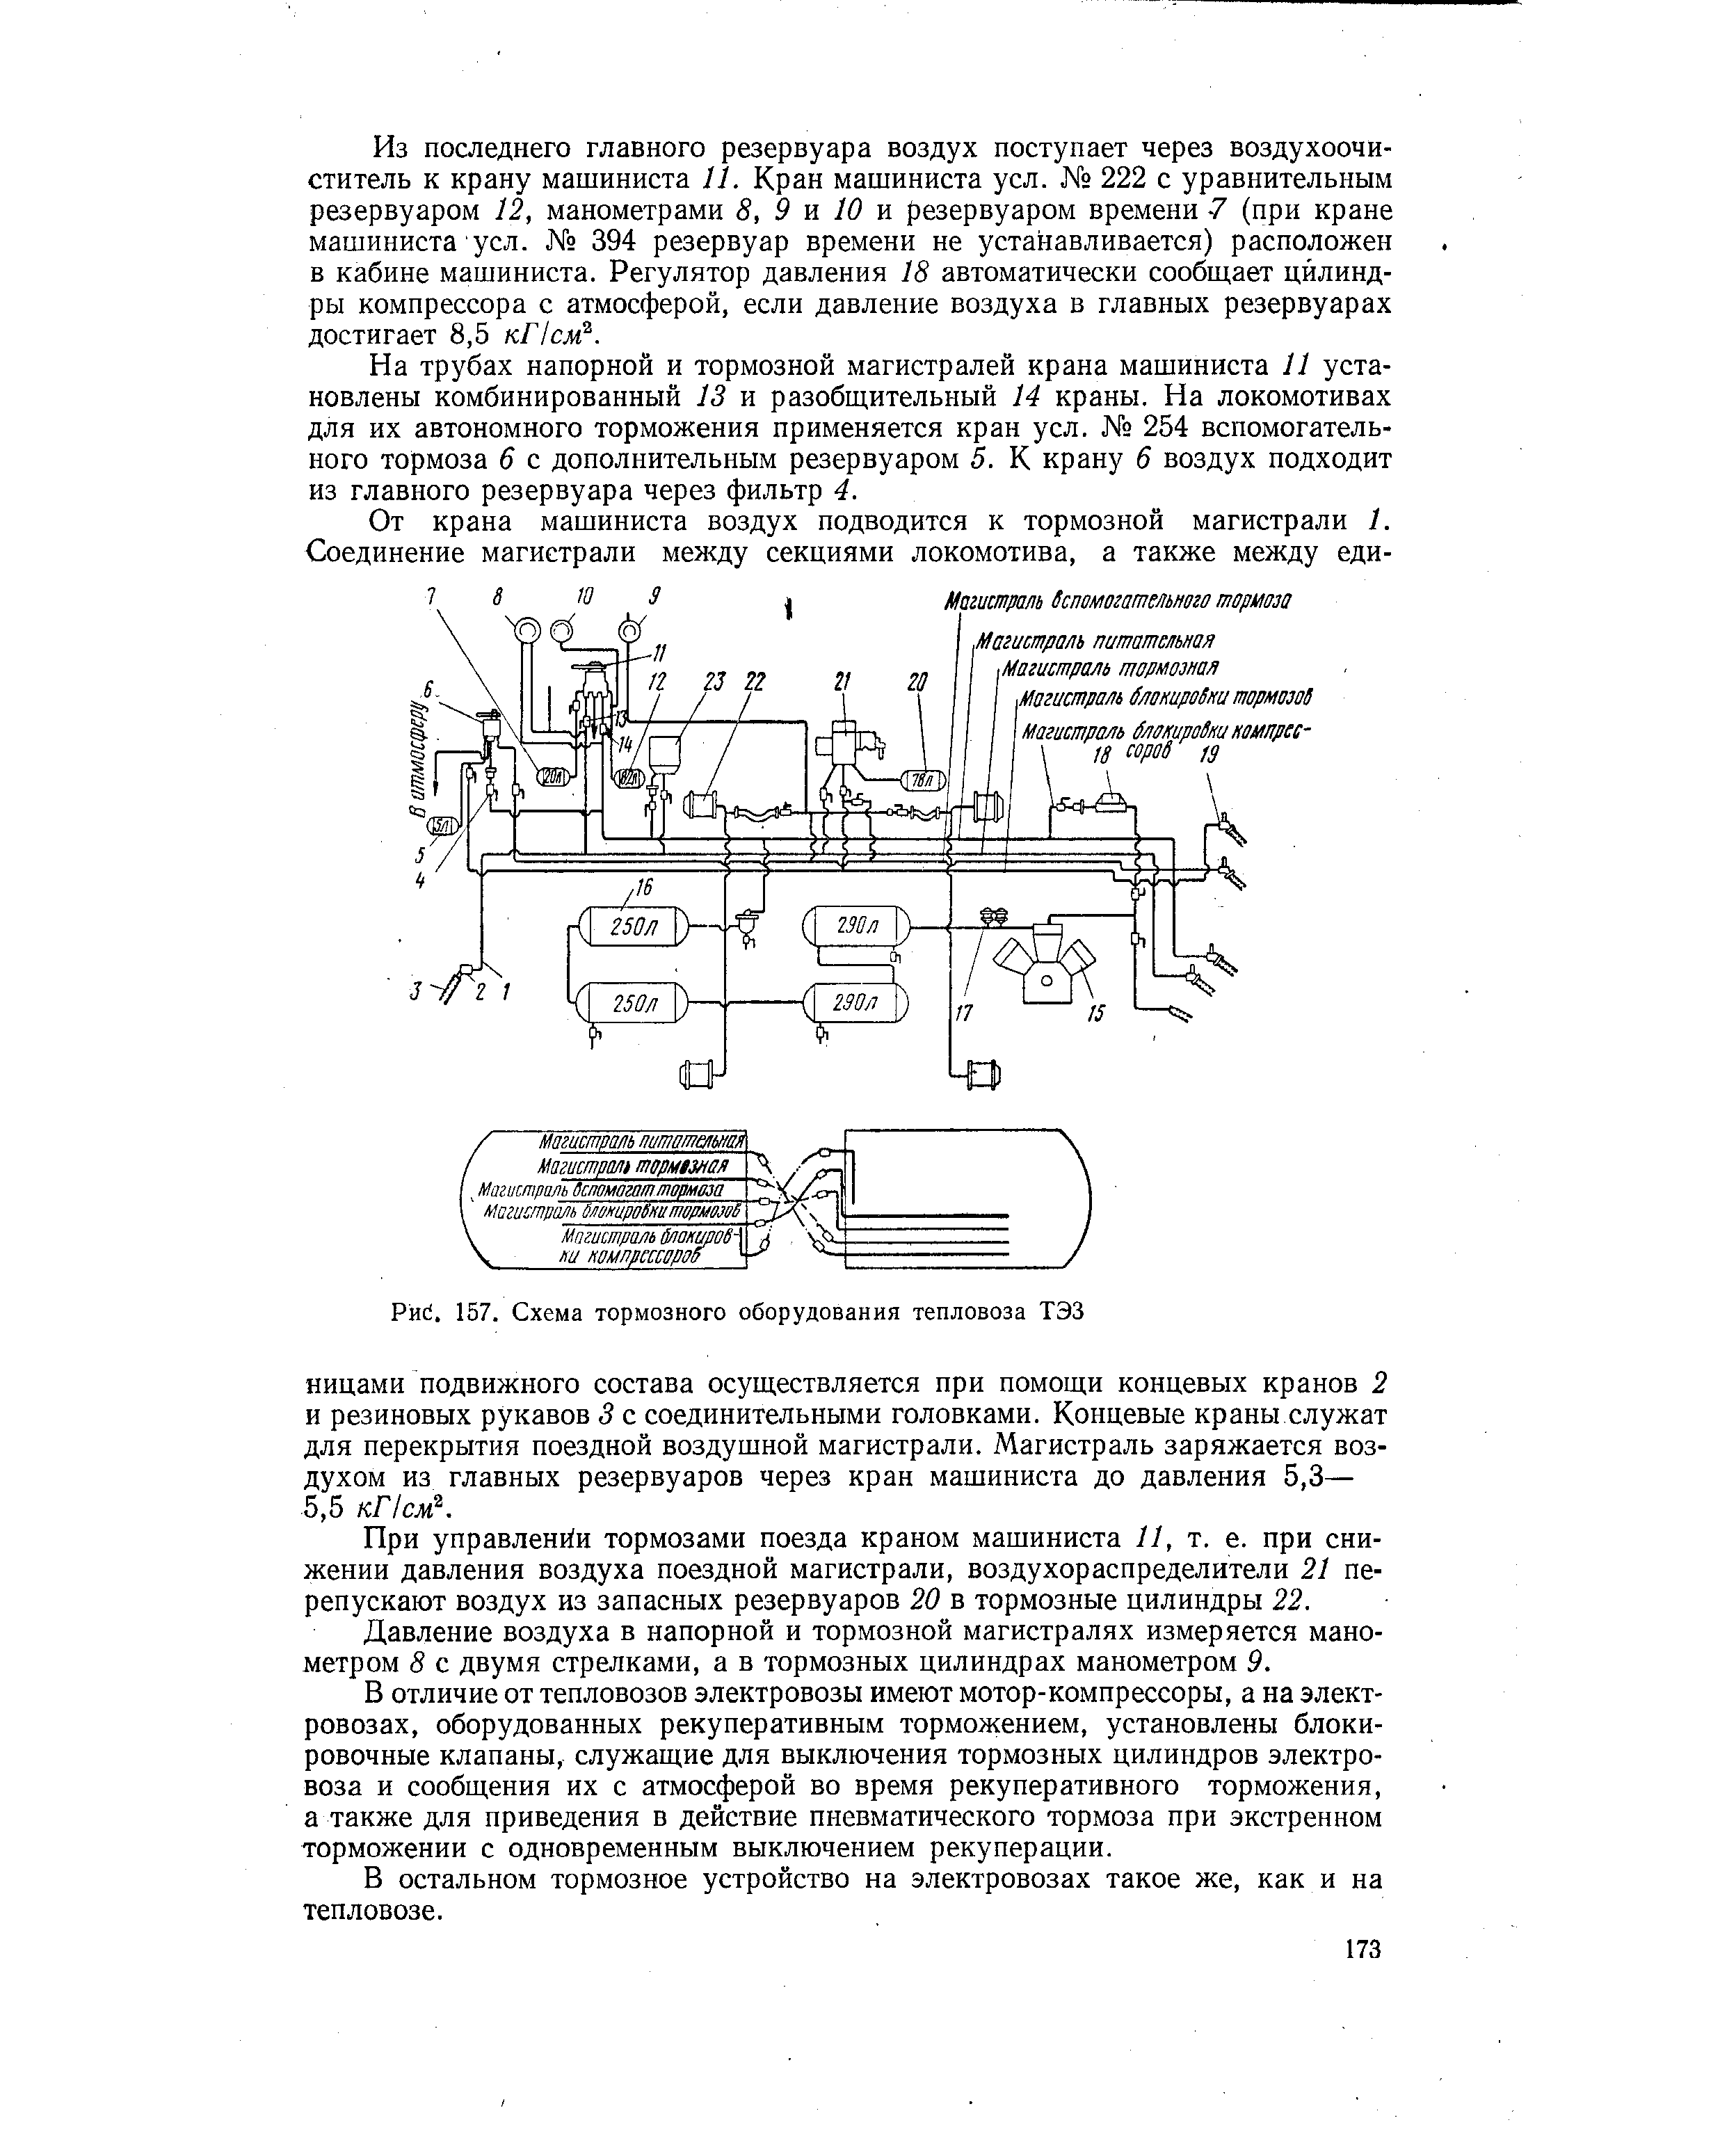 Рис. 157. Схема тормозного оборудования тепловоза ТЭЗ
